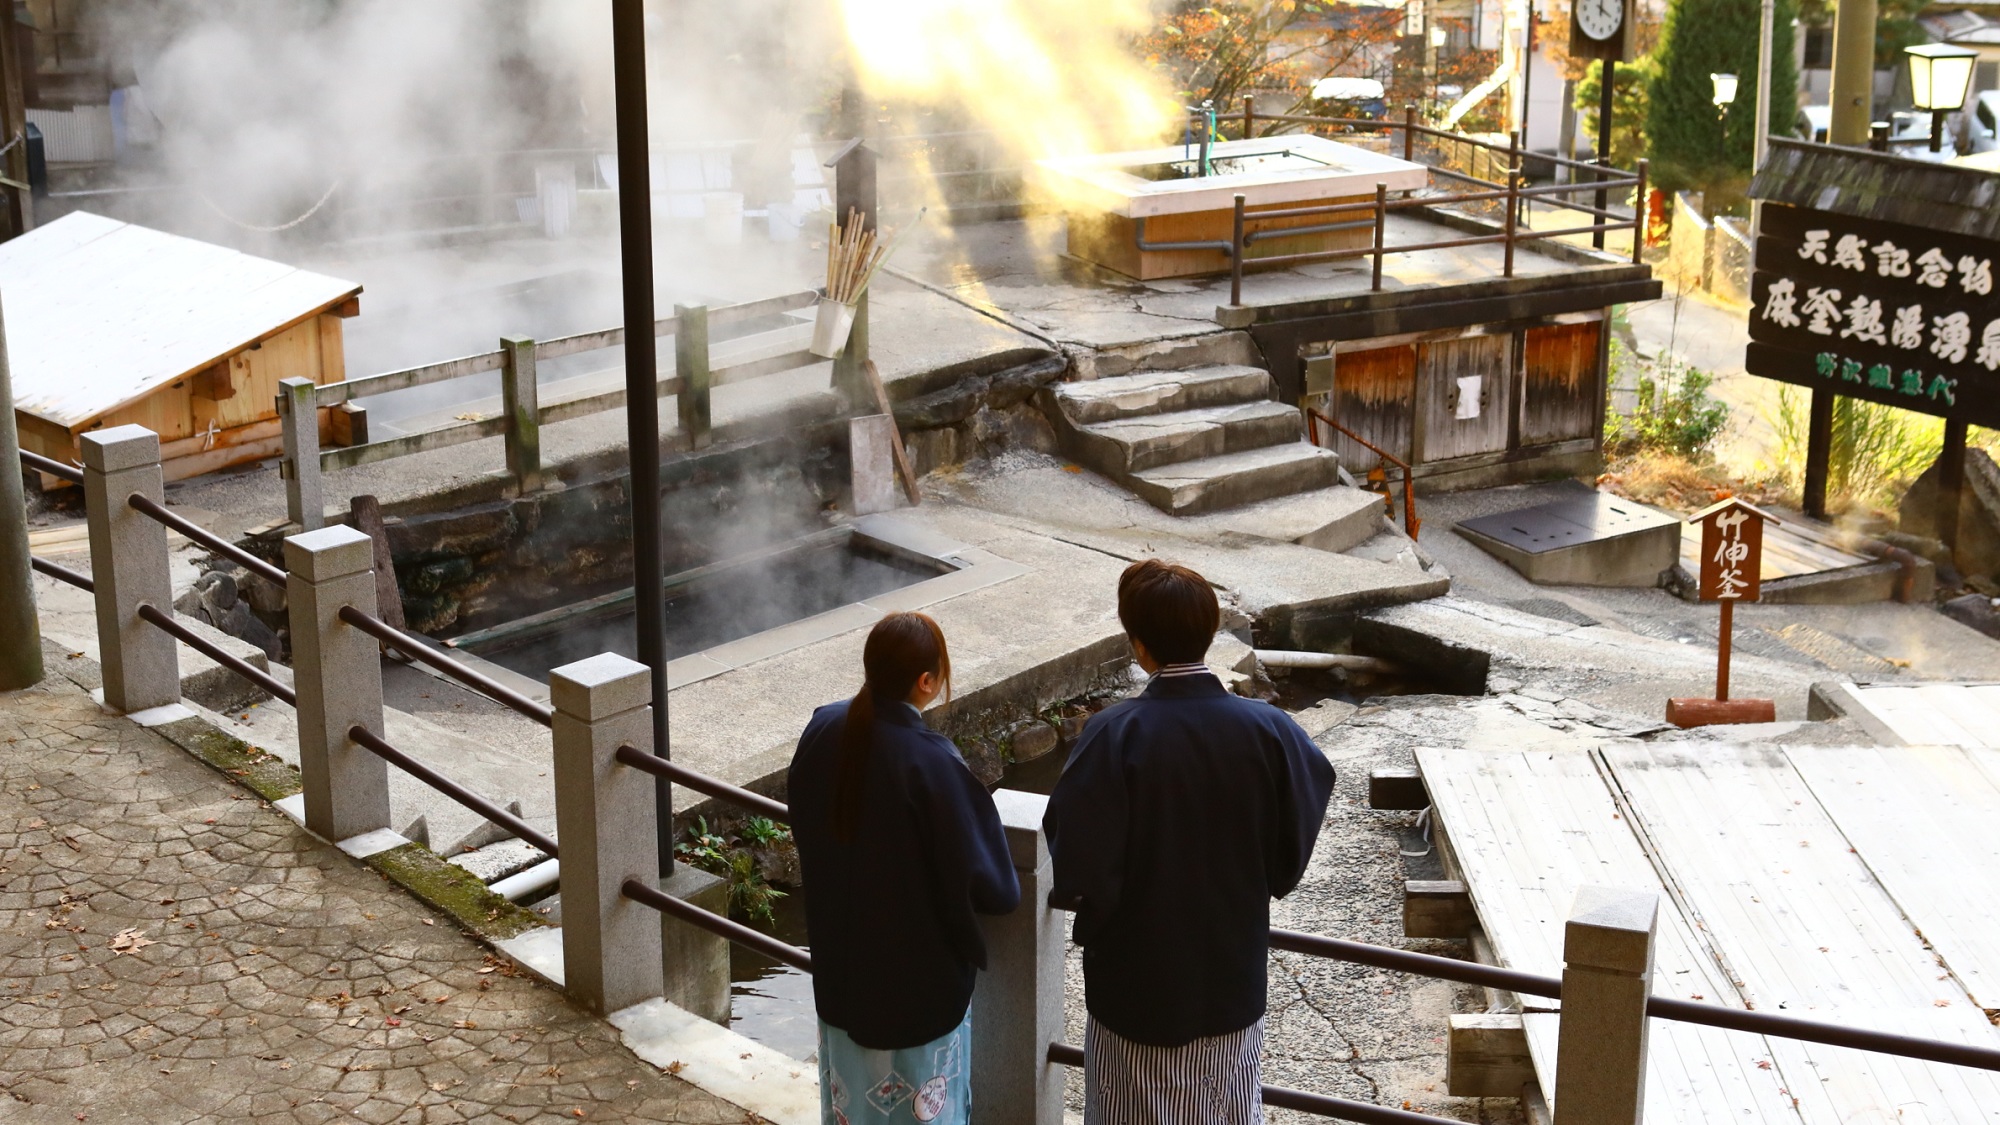 麻釜。100℃近い熱湯が湧出する源泉の一つ。村の人達の生活の場。